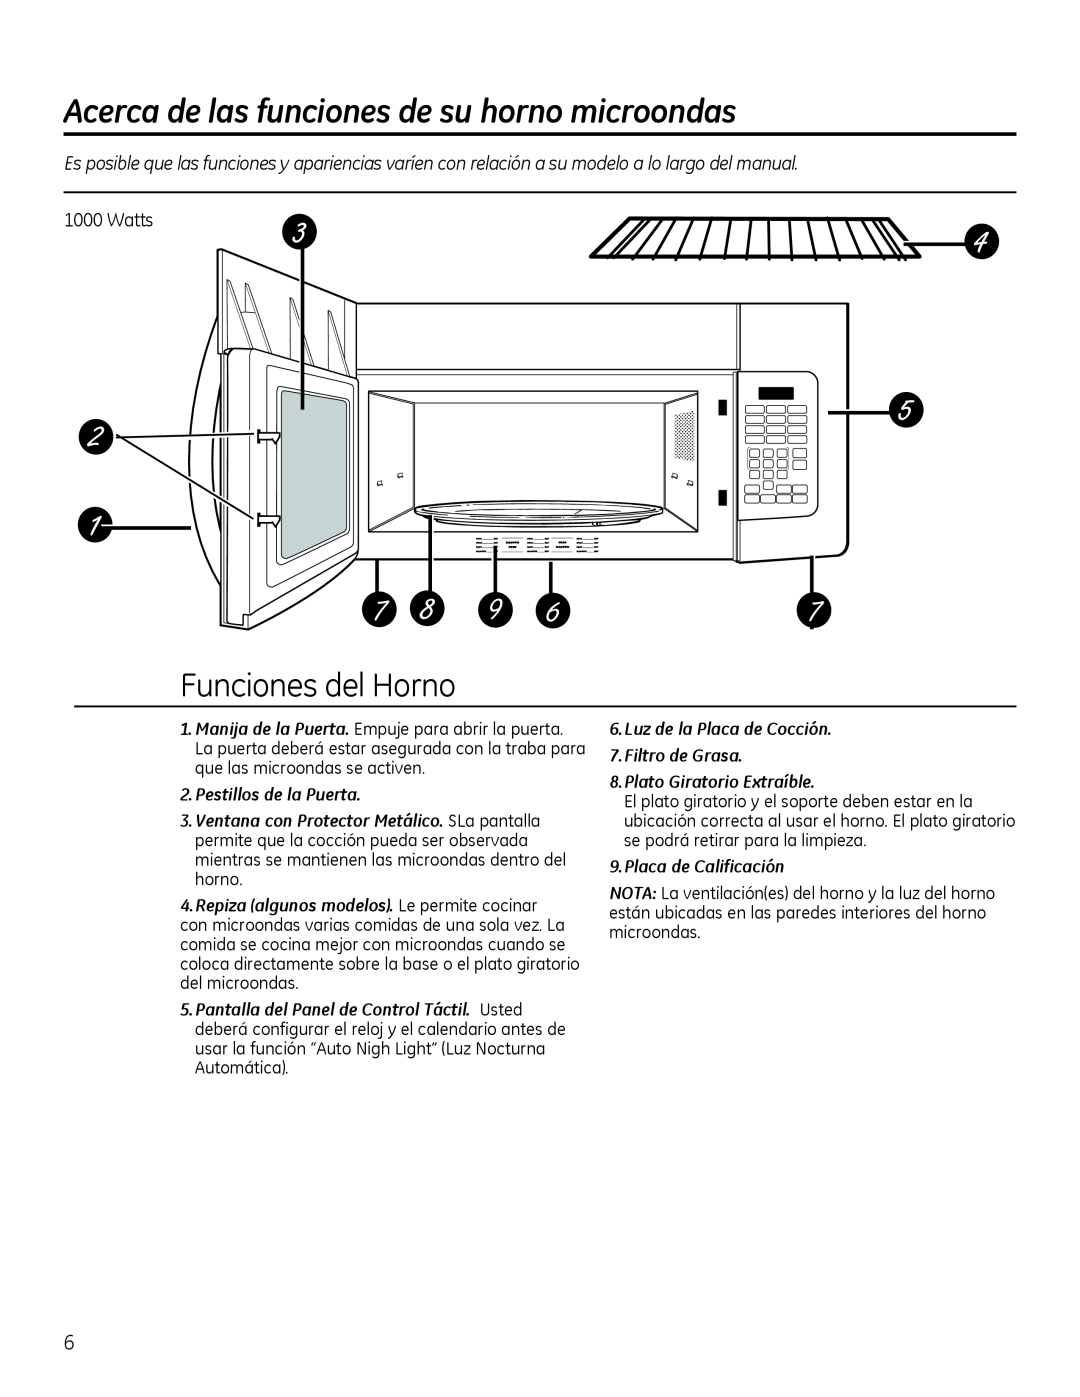 GE Microwave Oven owner manual Acerca de las funciones de su horno microondas, Funciones del Horno, Pestillos de la Puerta 